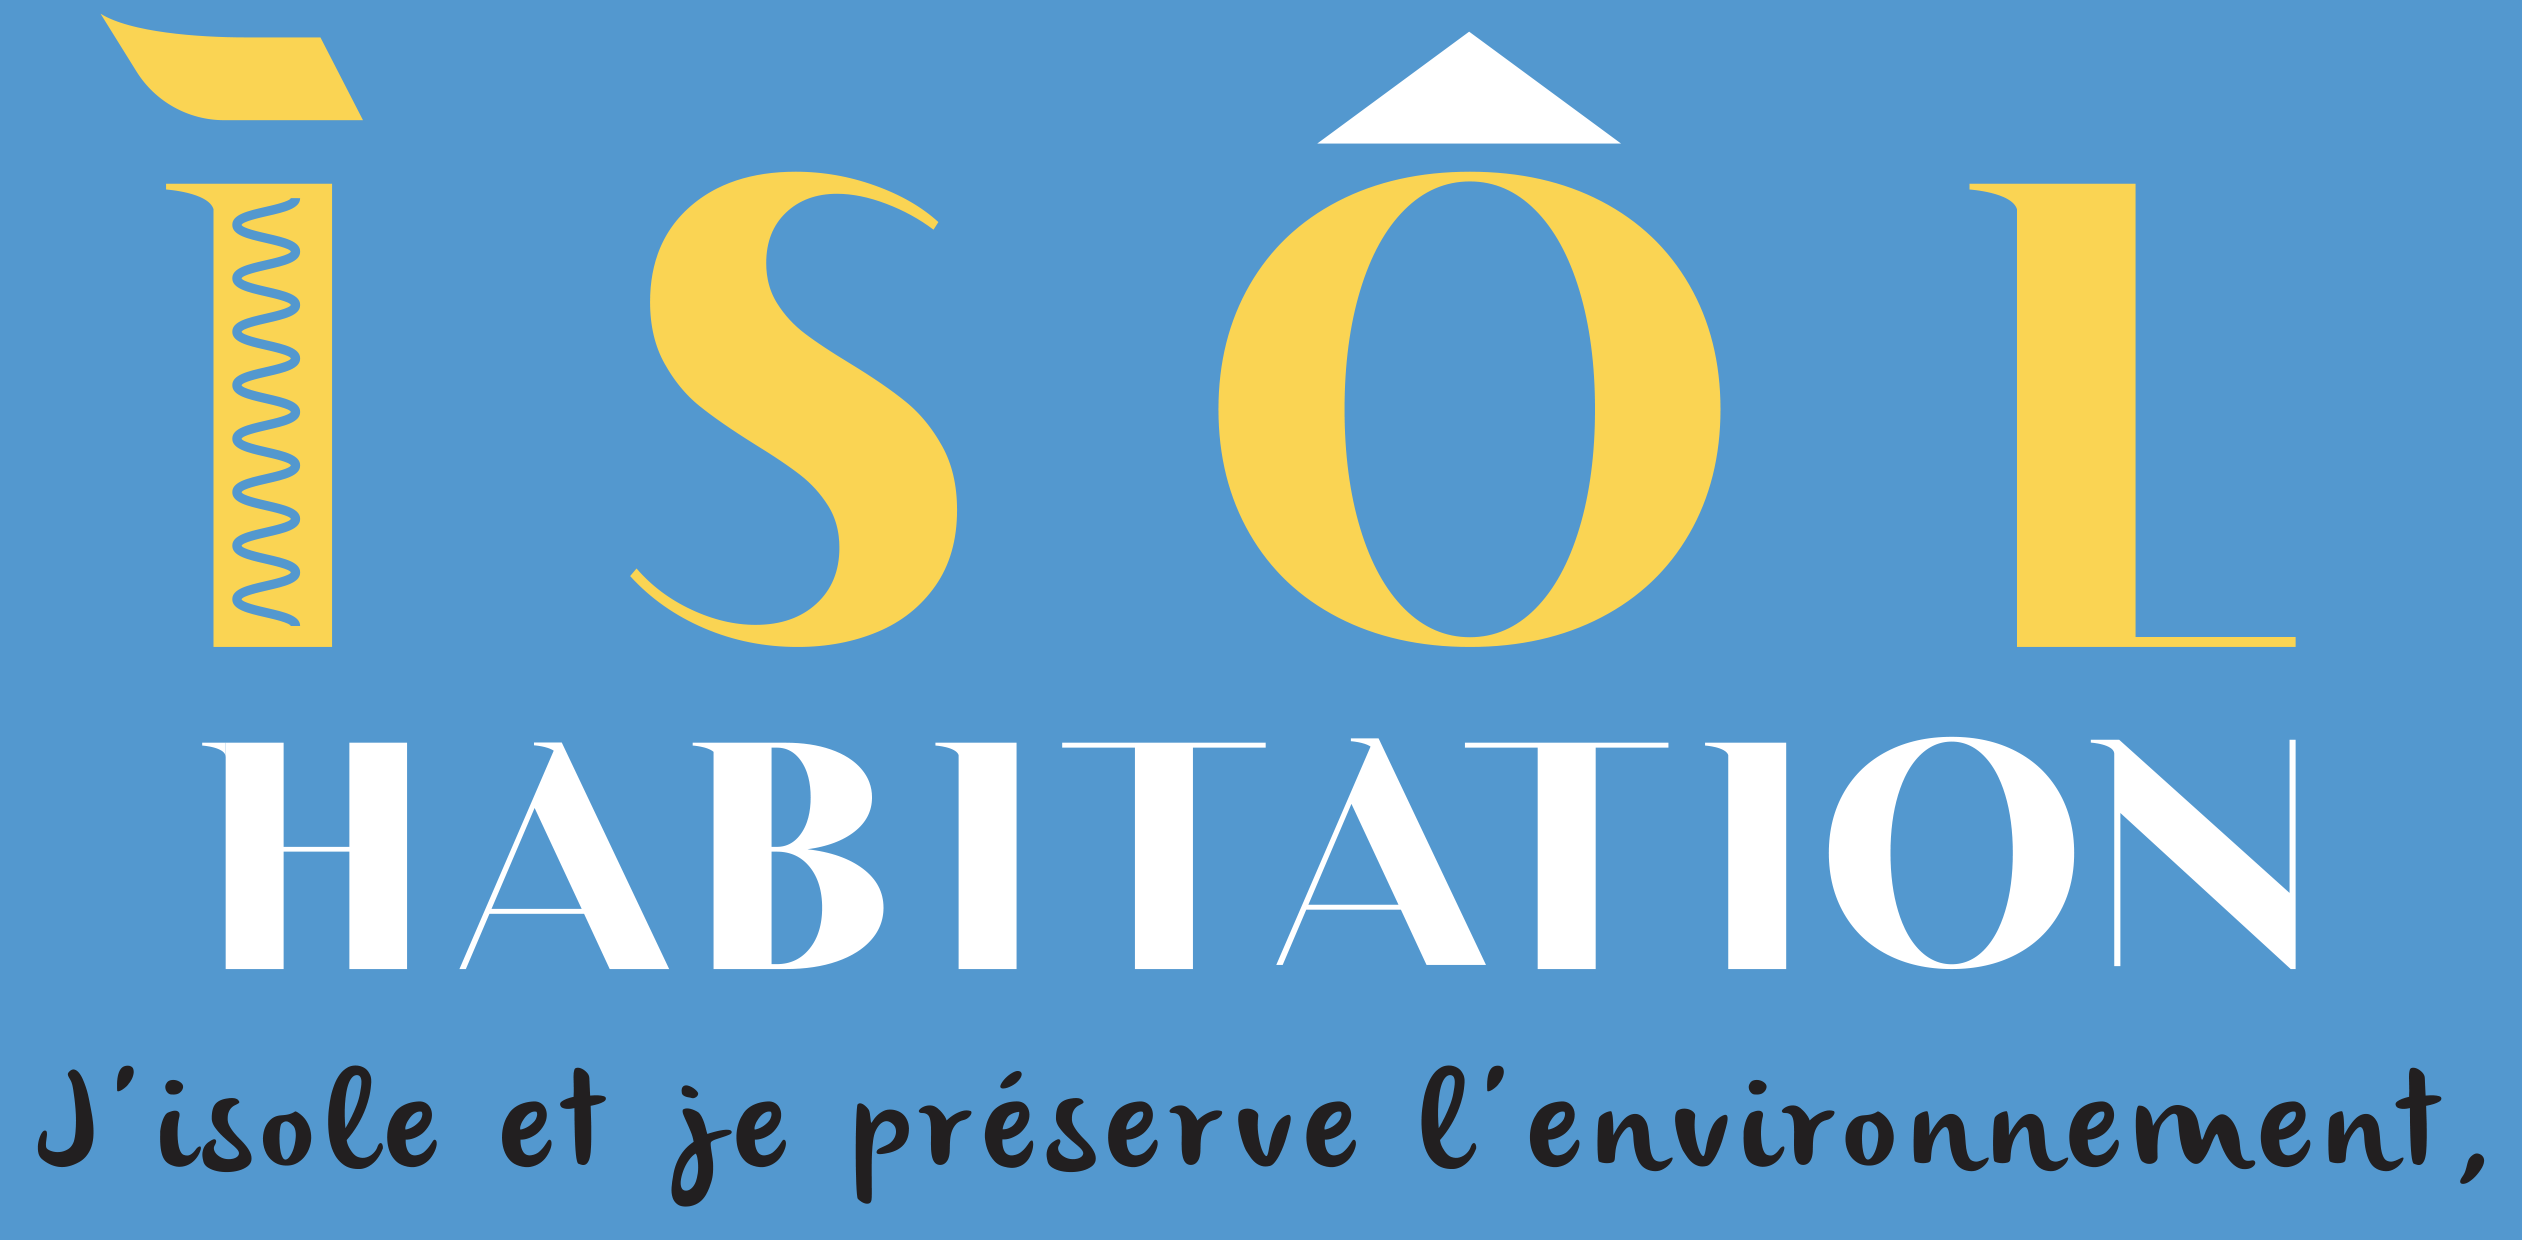 Isol habitation logo